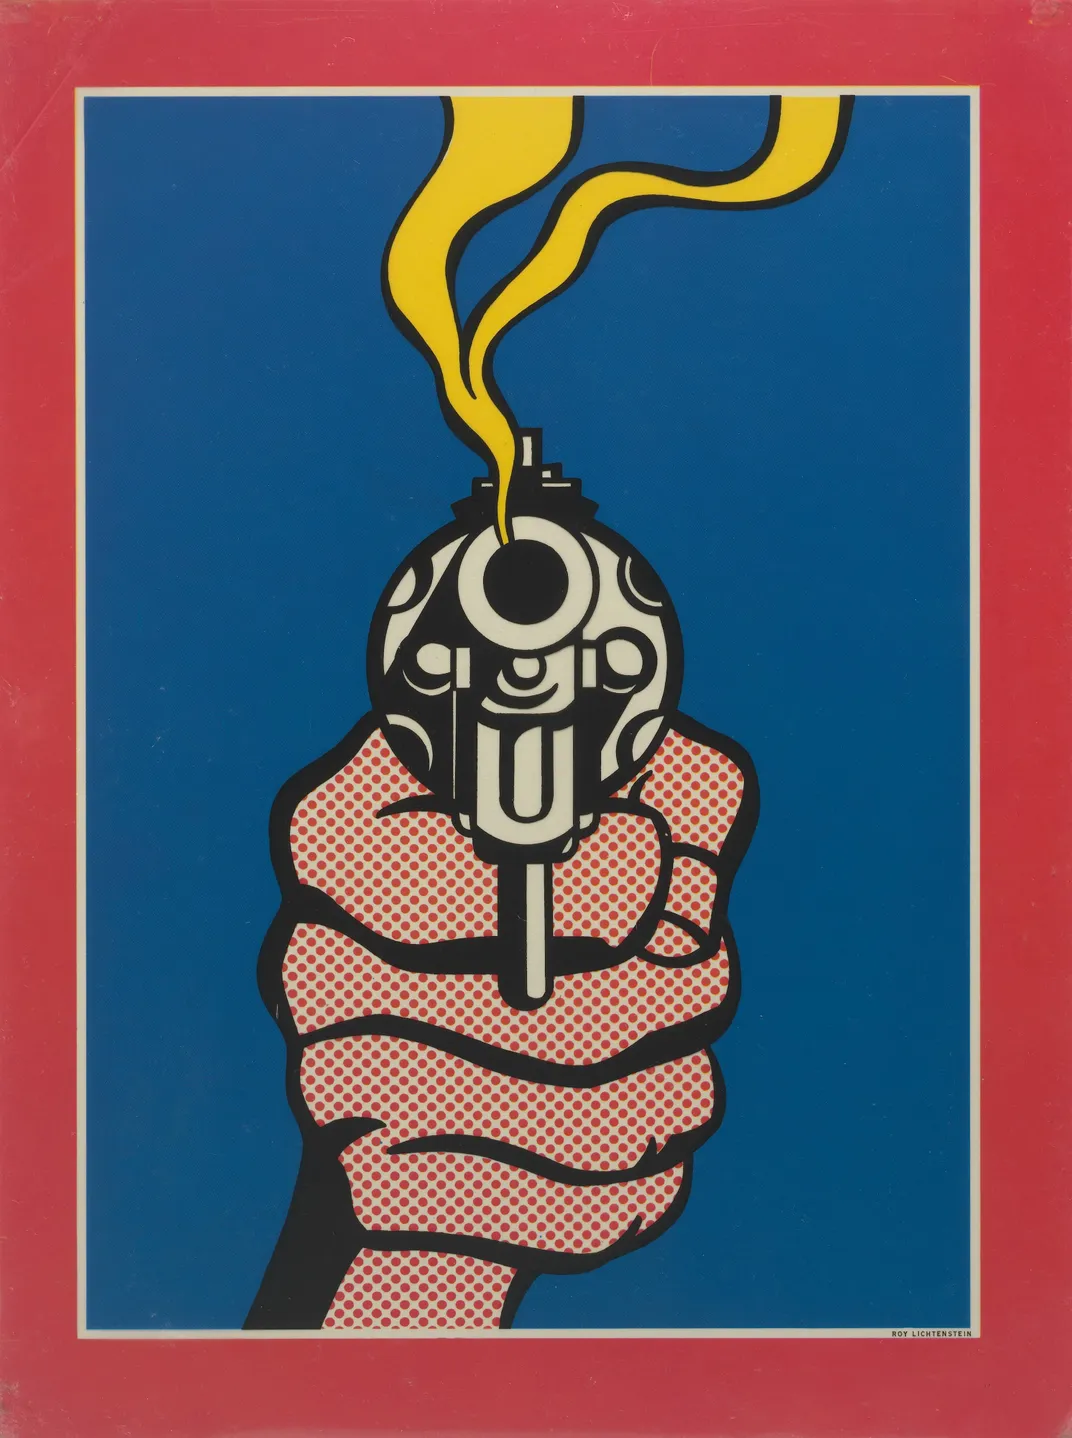 Lichtenstein, Gun in America